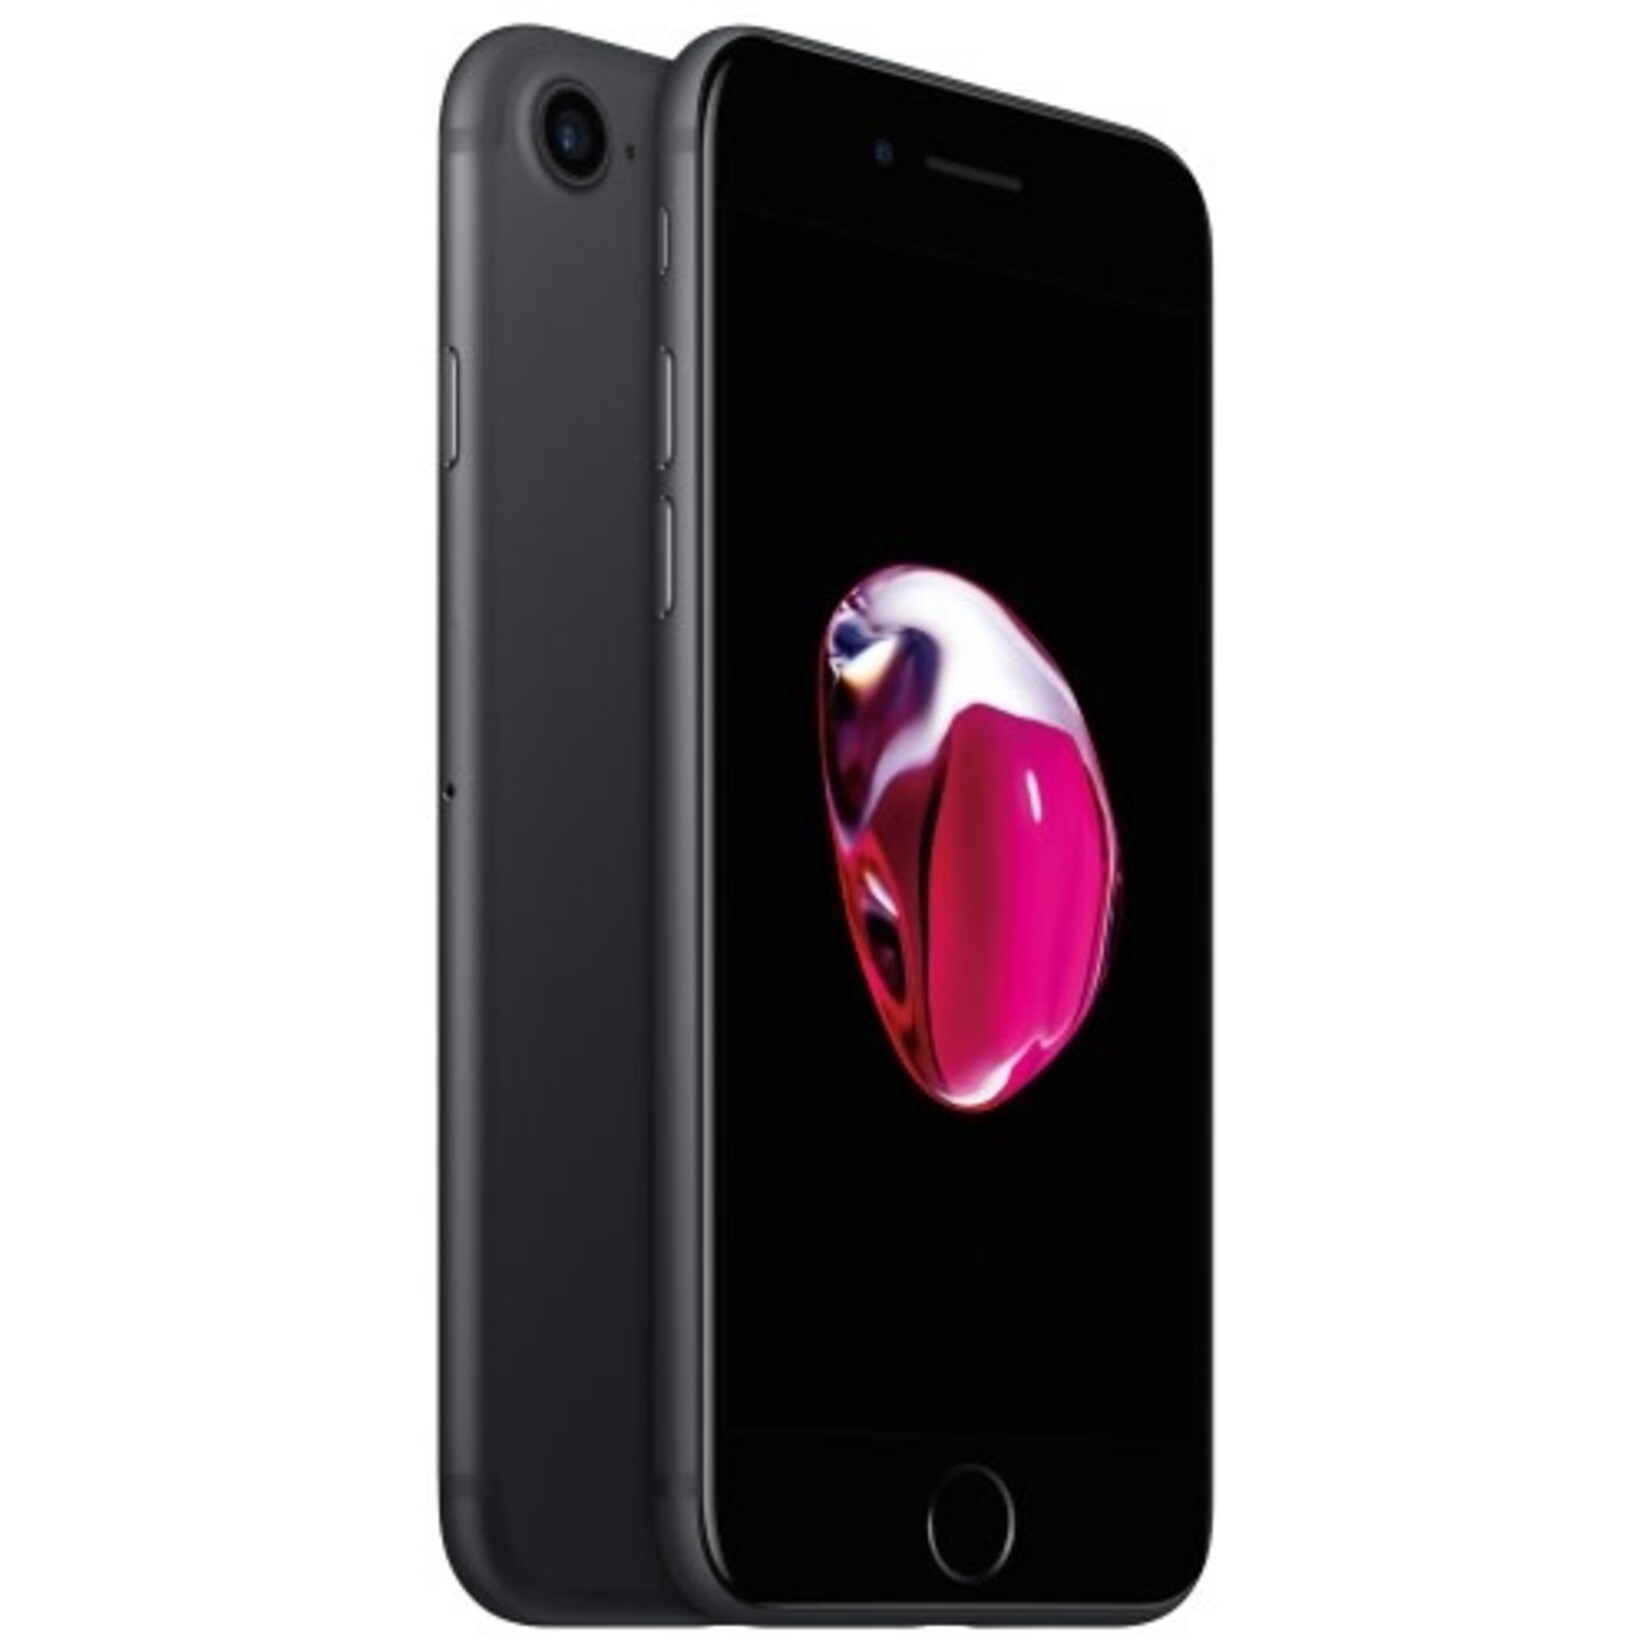 Apple iPhone 7 Noir 256GB - Déverrouillé *écran blanc/arrière noir*